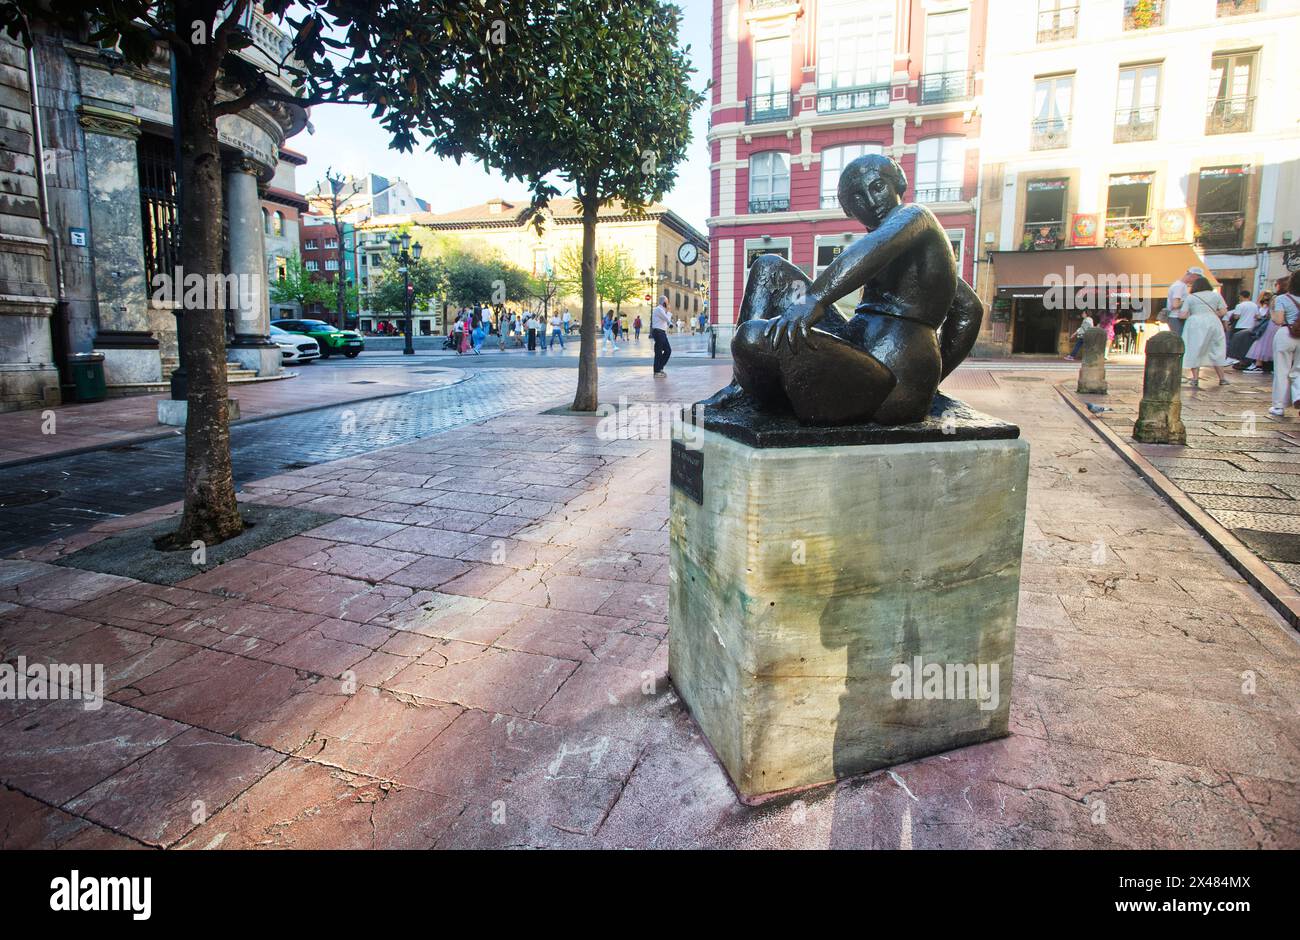 Femme assise, auteur ; Manuel Martínez Hugué, sculpture urbaine en bronze située dans la Calle San Francisco, dans la ville d'Oviedo, Asturies, Espagne Banque D'Images